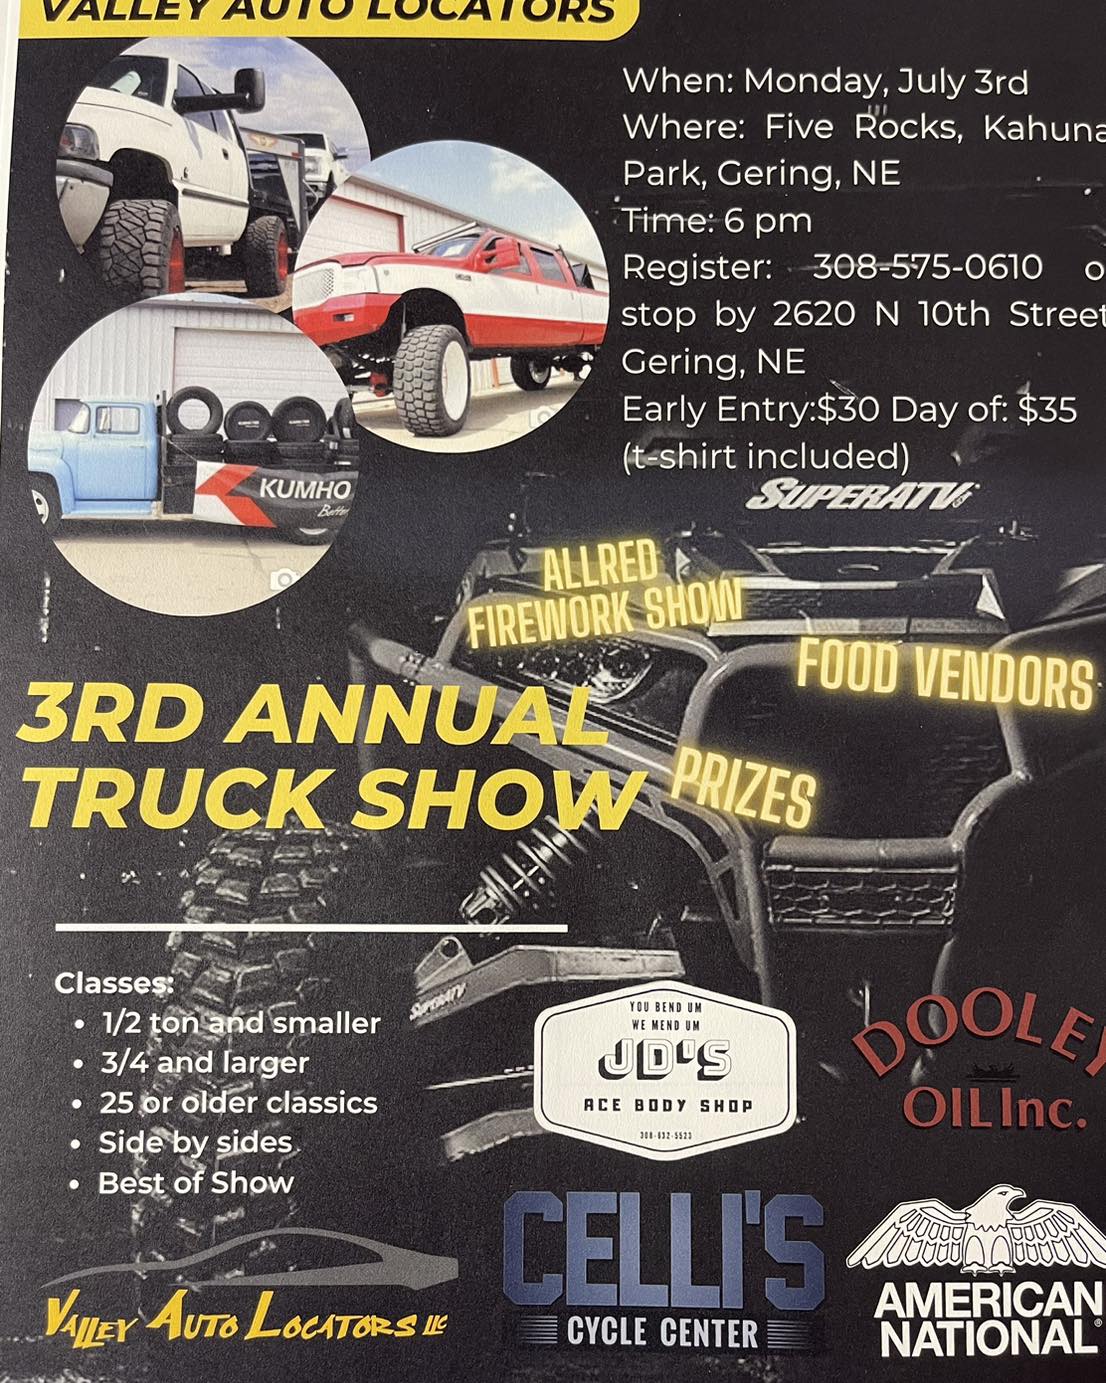 Event Promo Photo For 3rd Annual Valley Auto Locators Truck Show